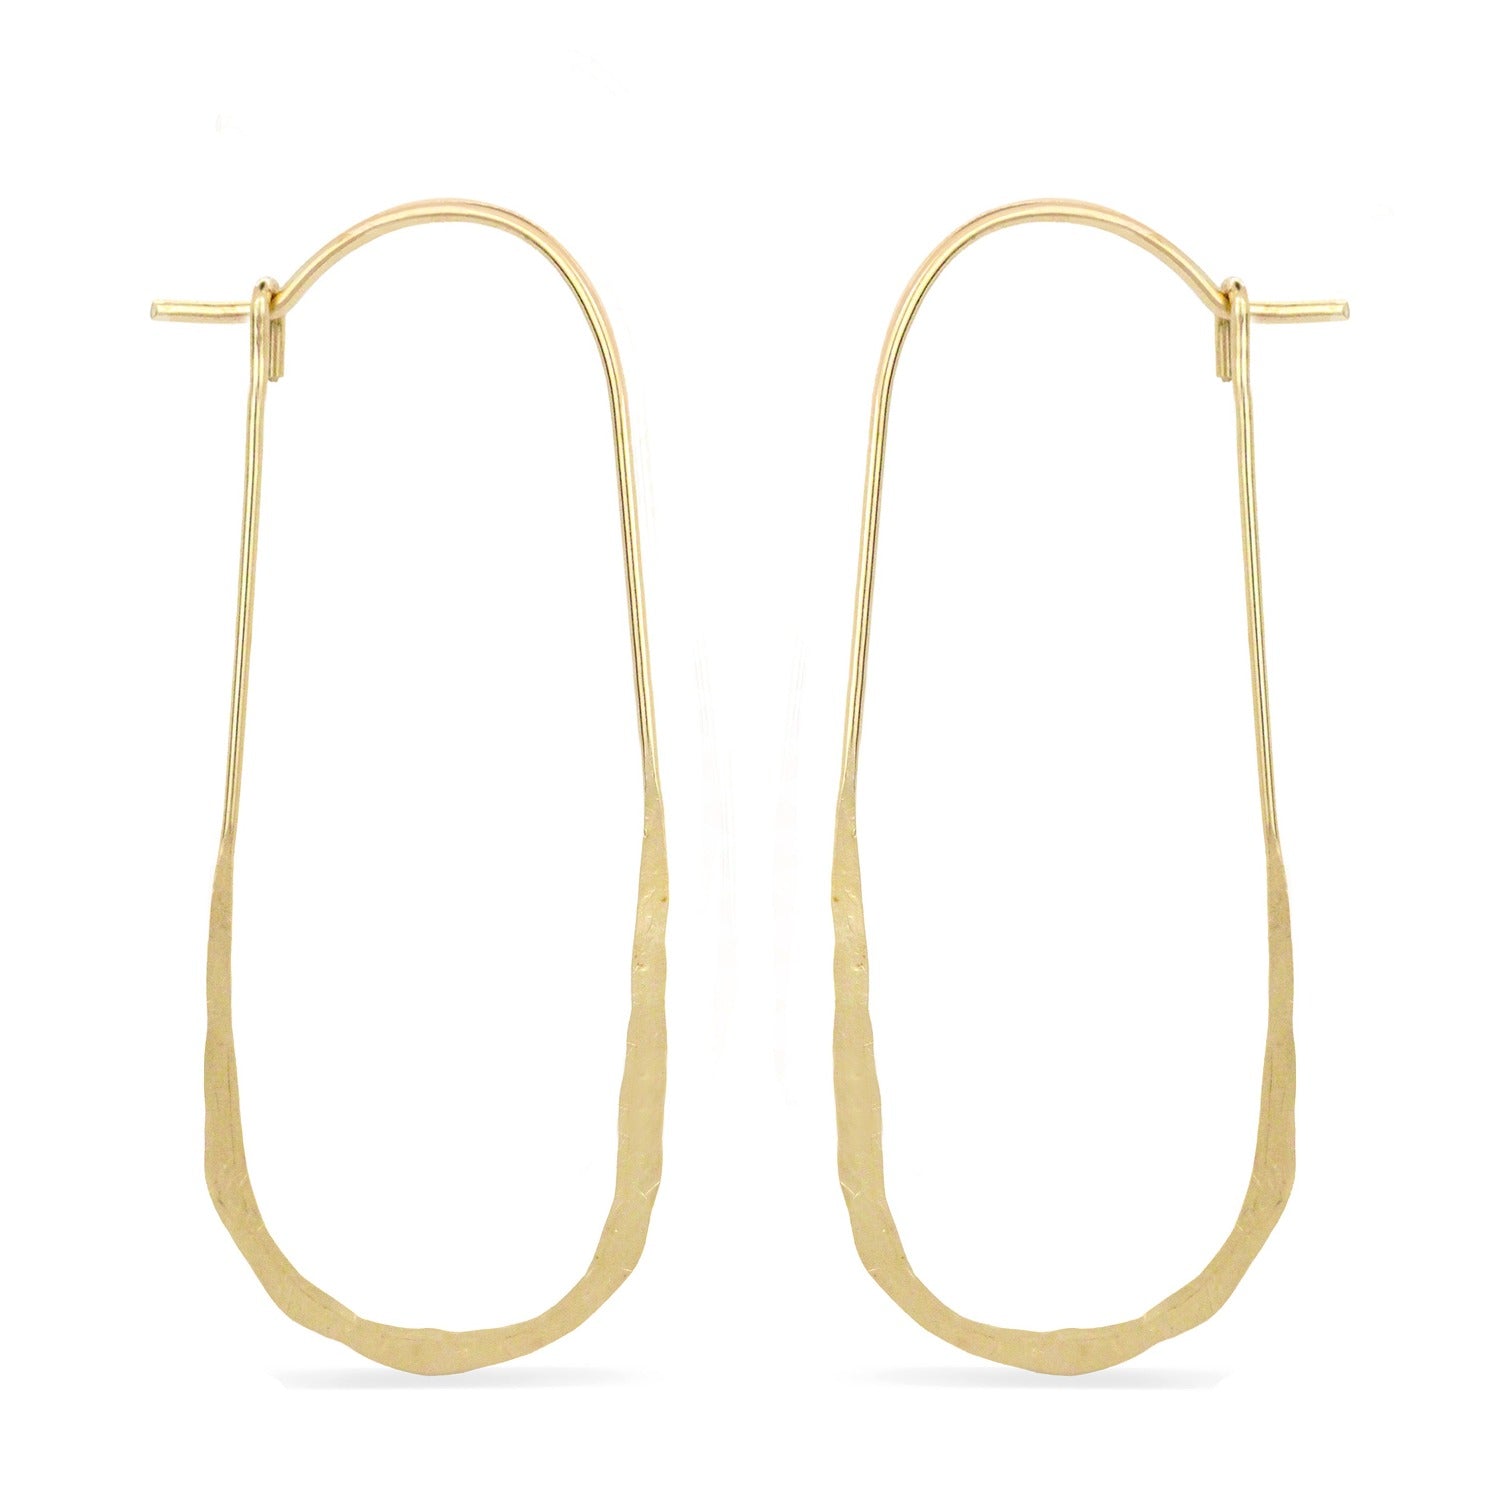 Elongated oval wire hoop earrings in gold